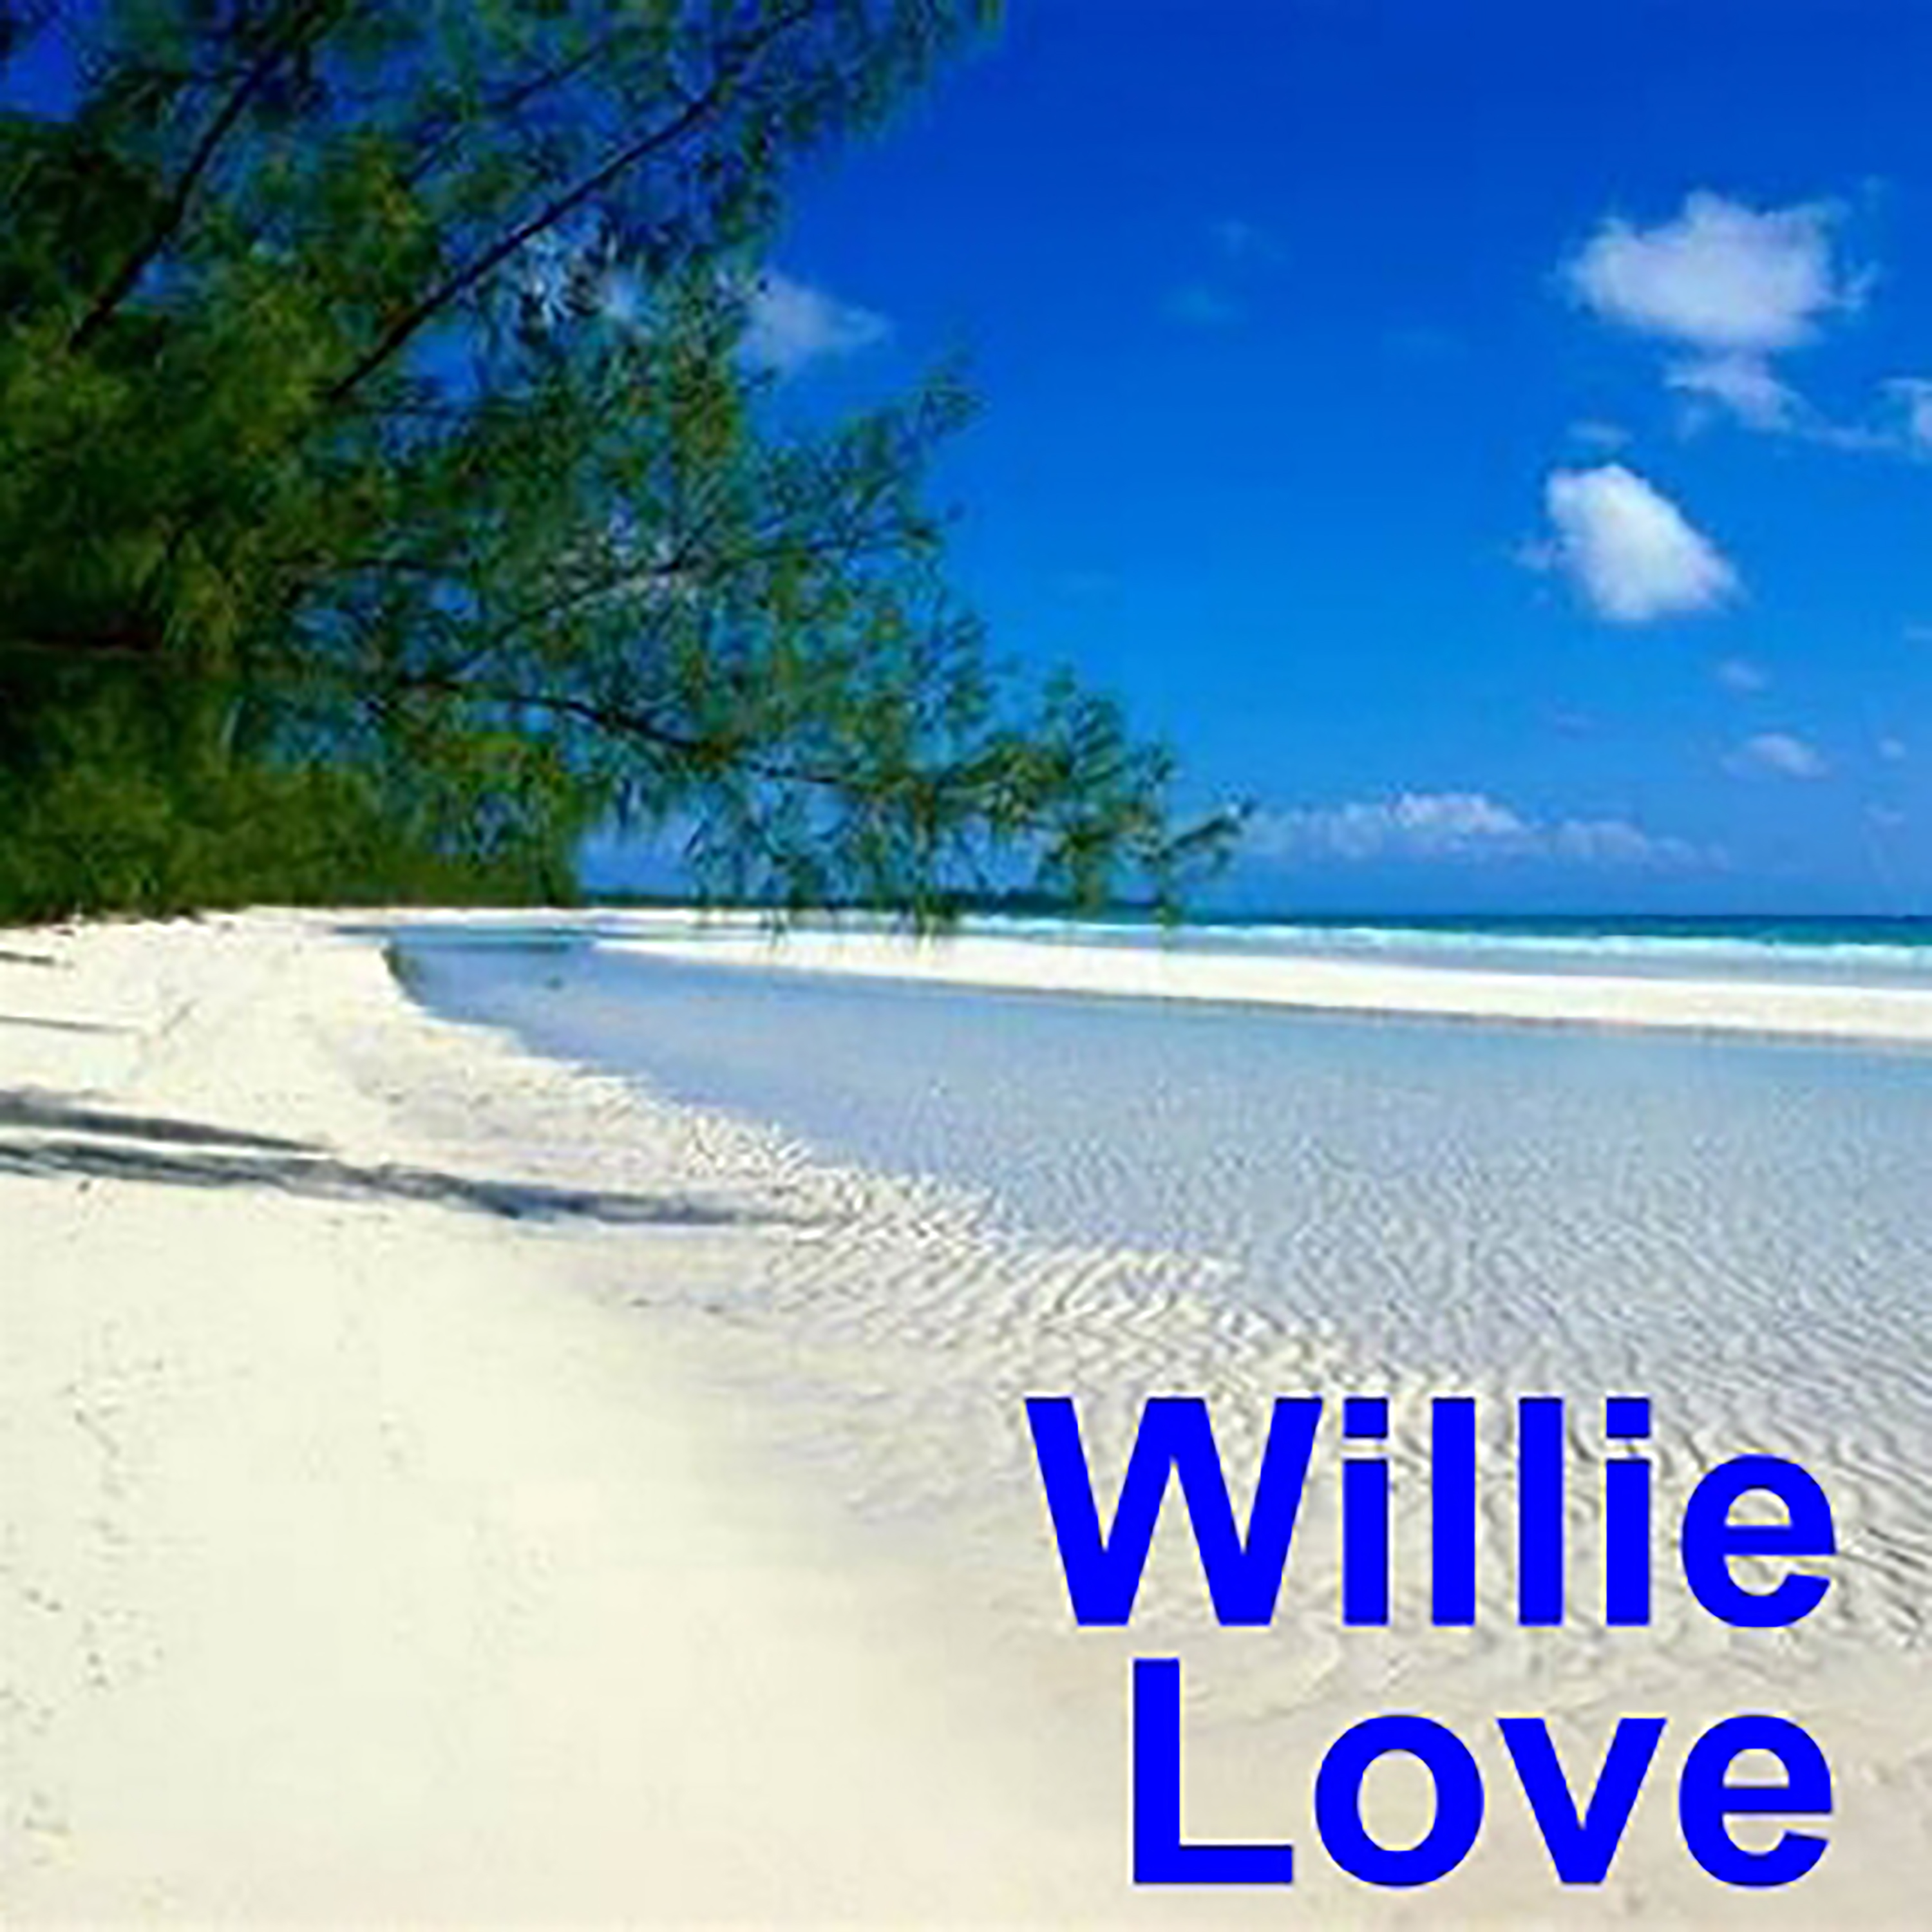 Willie Love